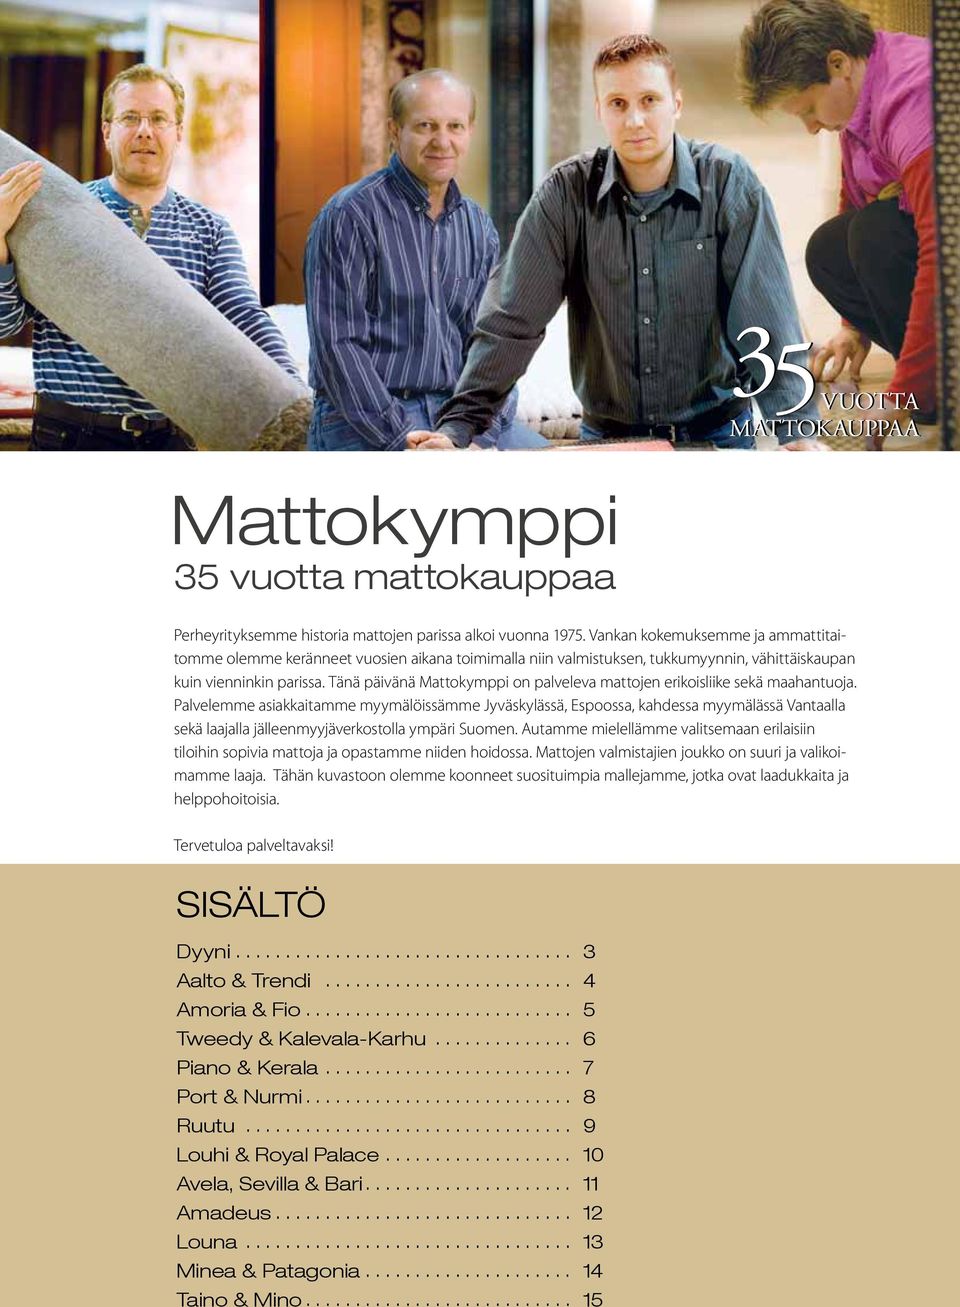 Tänä päivänä Mattokymppi on palveleva mattojen erikoisliike sekä maahantuoja.